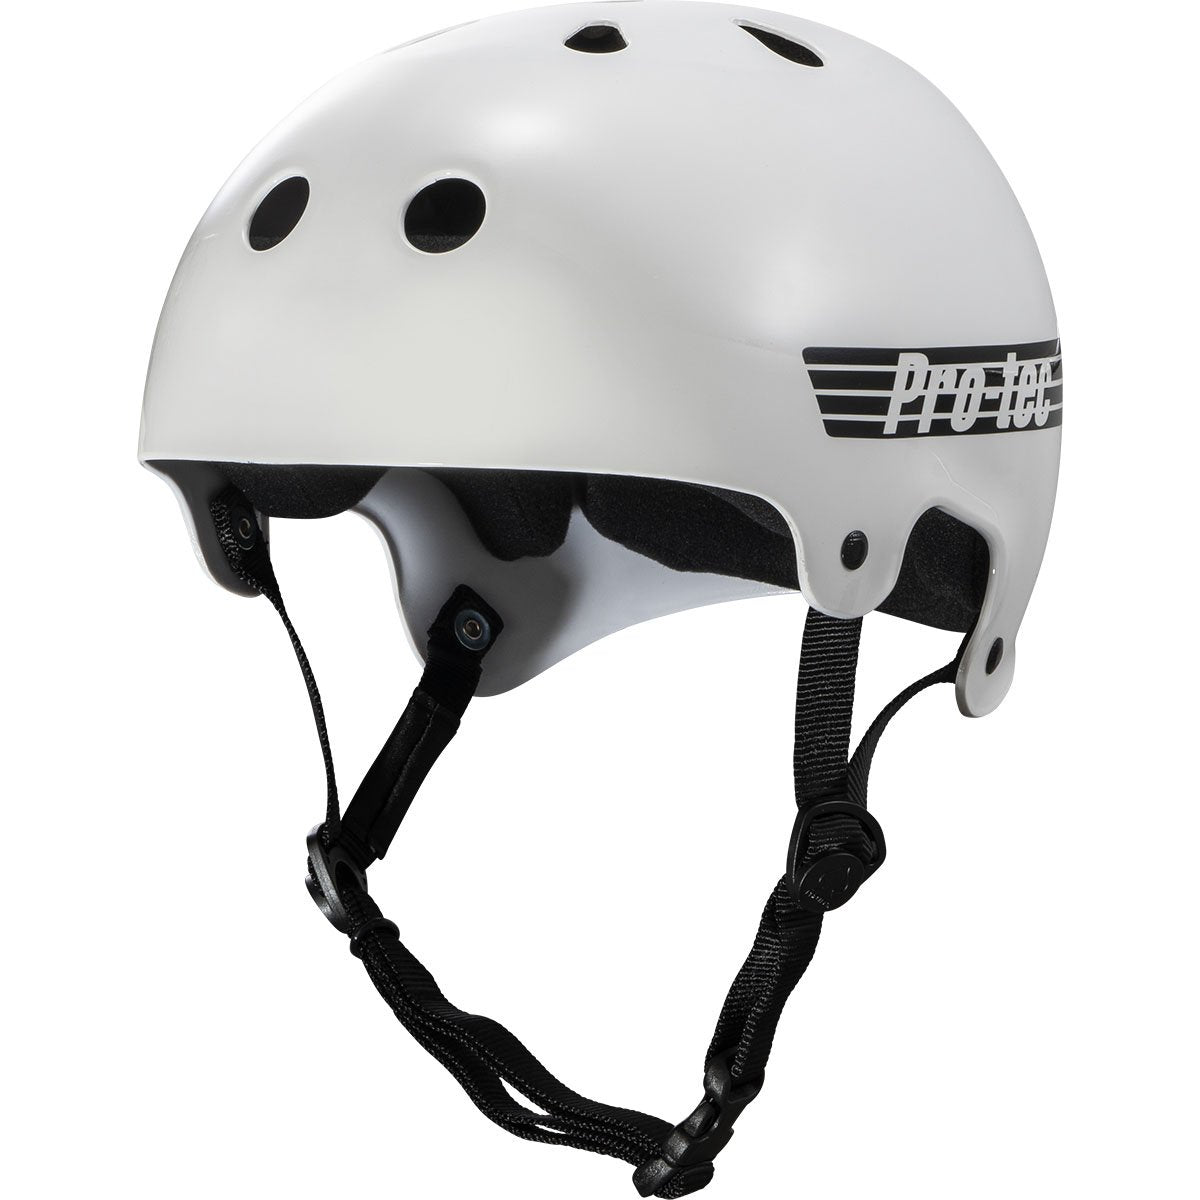 Pro-Tec Old School Skate Helmet - Gloss White image 1